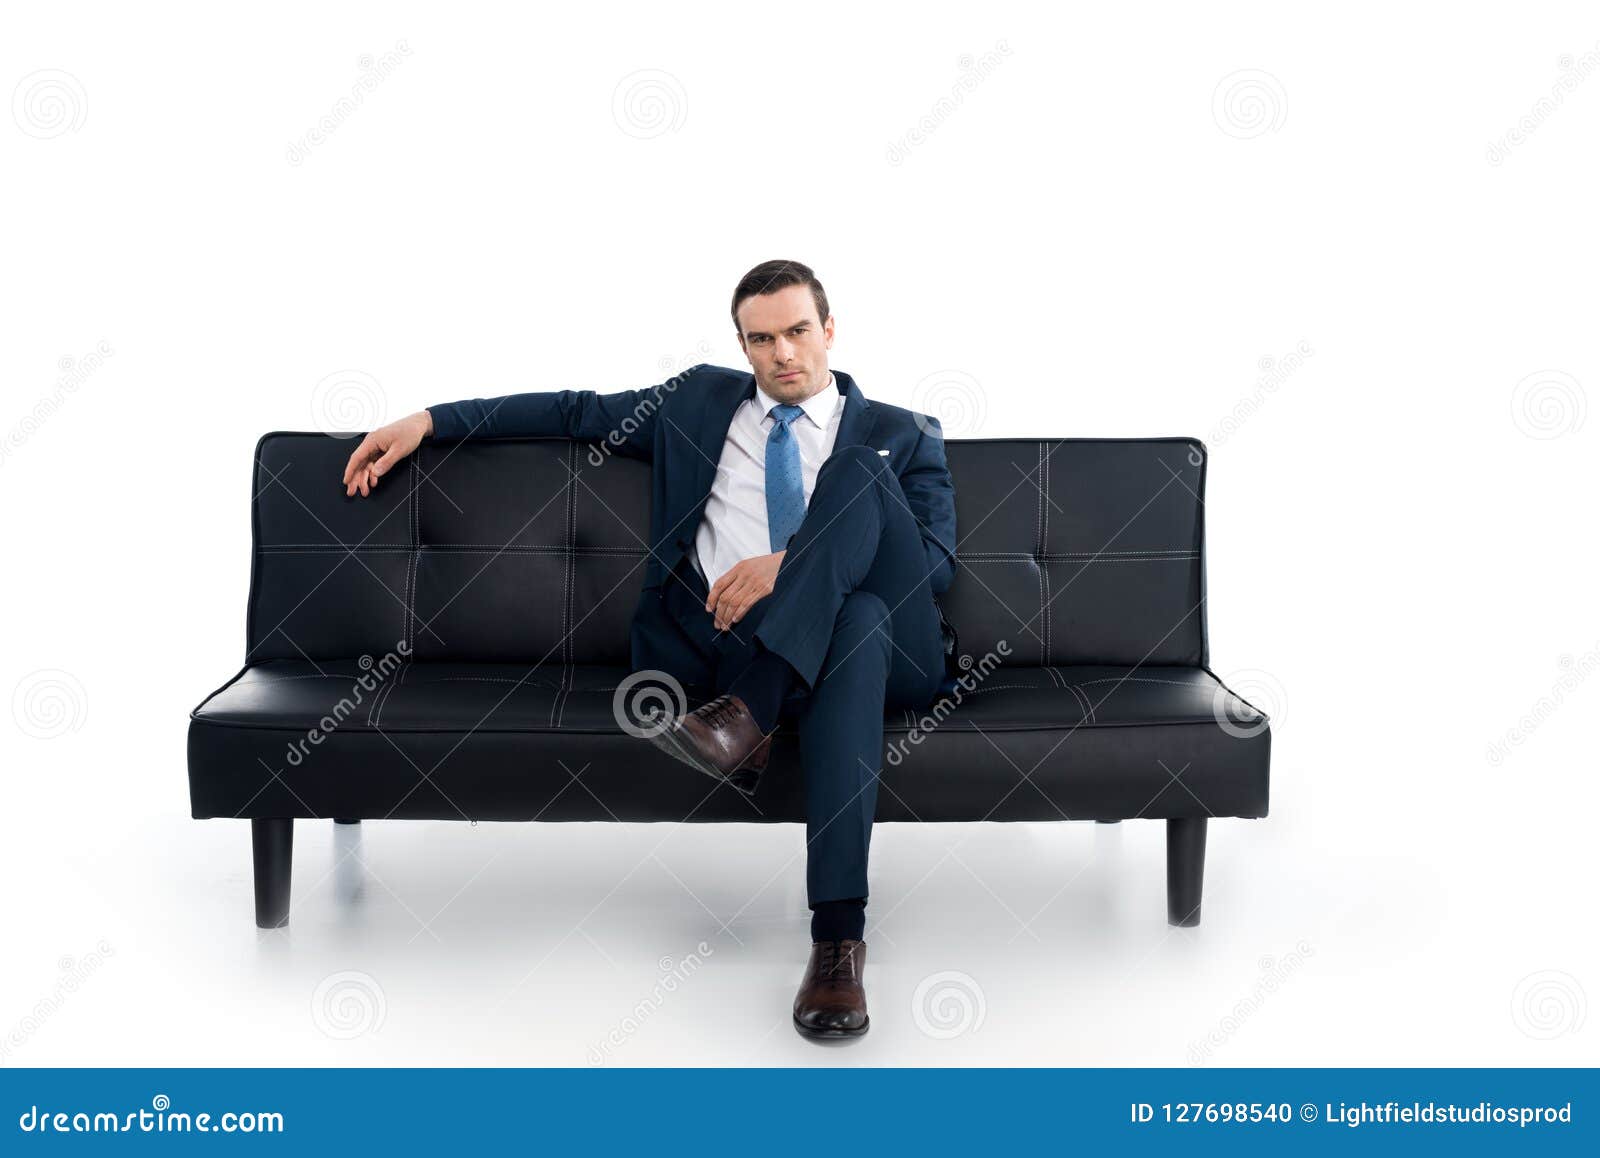 Мужчина сидит раздвинув. Человек сидит на диване. Мужчина на диване фотосессия. Человек облокотился на диван. Чел сидит на диване.